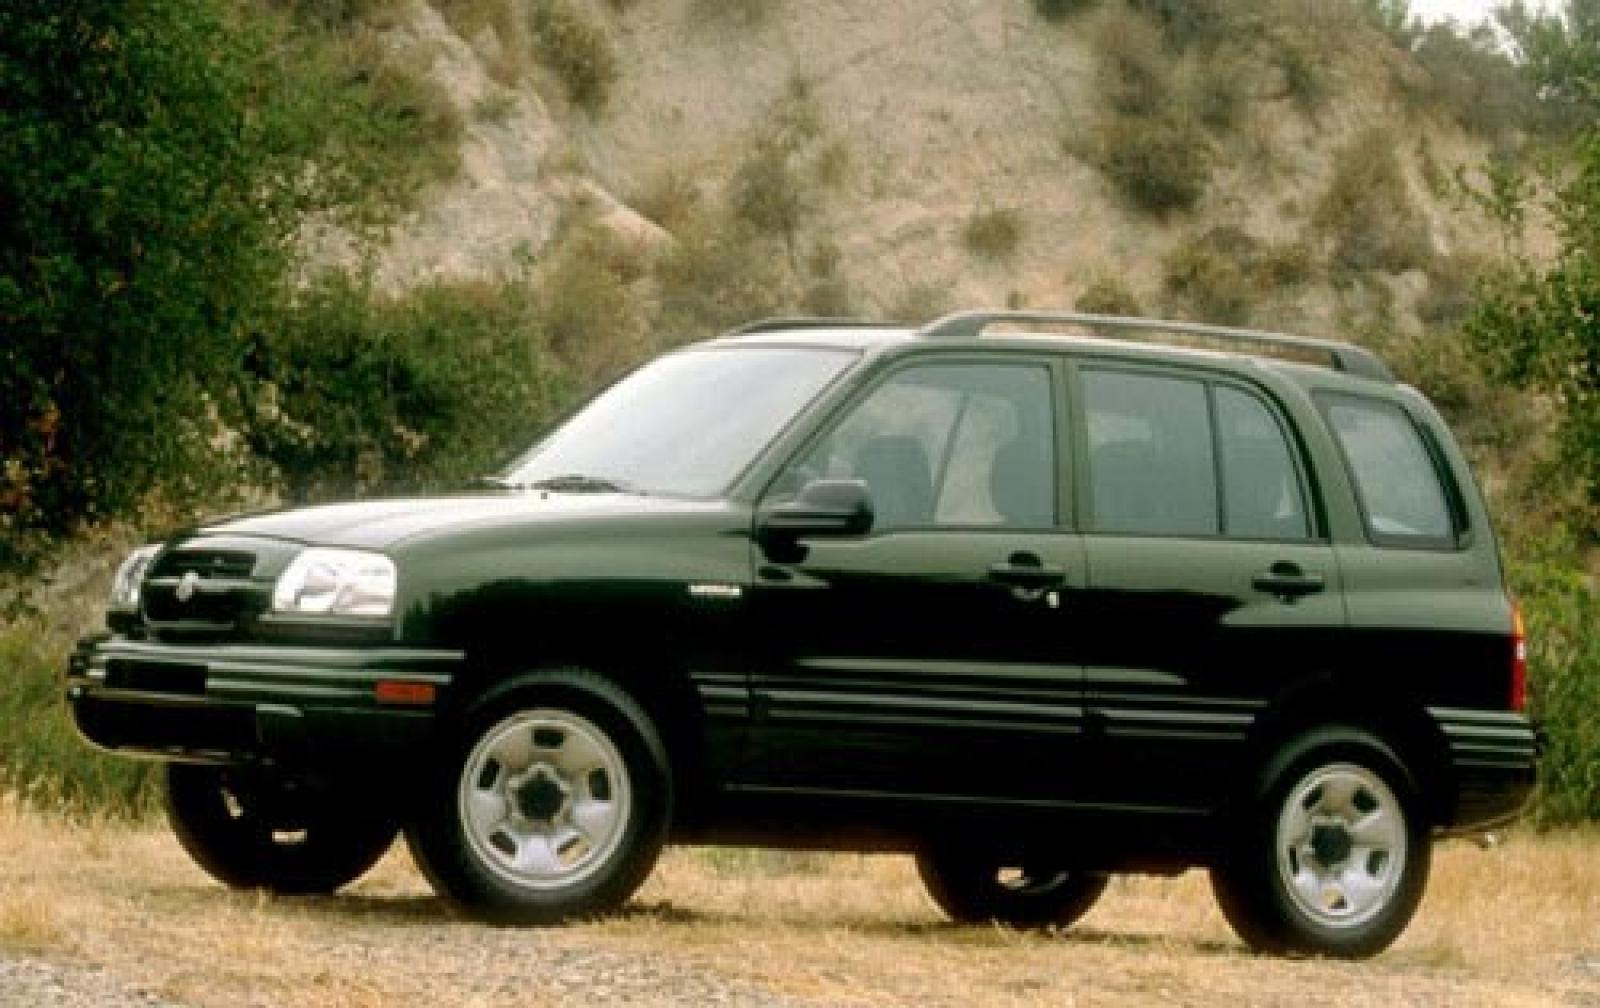 Suzuki vitara 2000. Grand Vitara 2000. Suzuki Grand Vitara 2002. Suzuki Grand Vitara 1999.